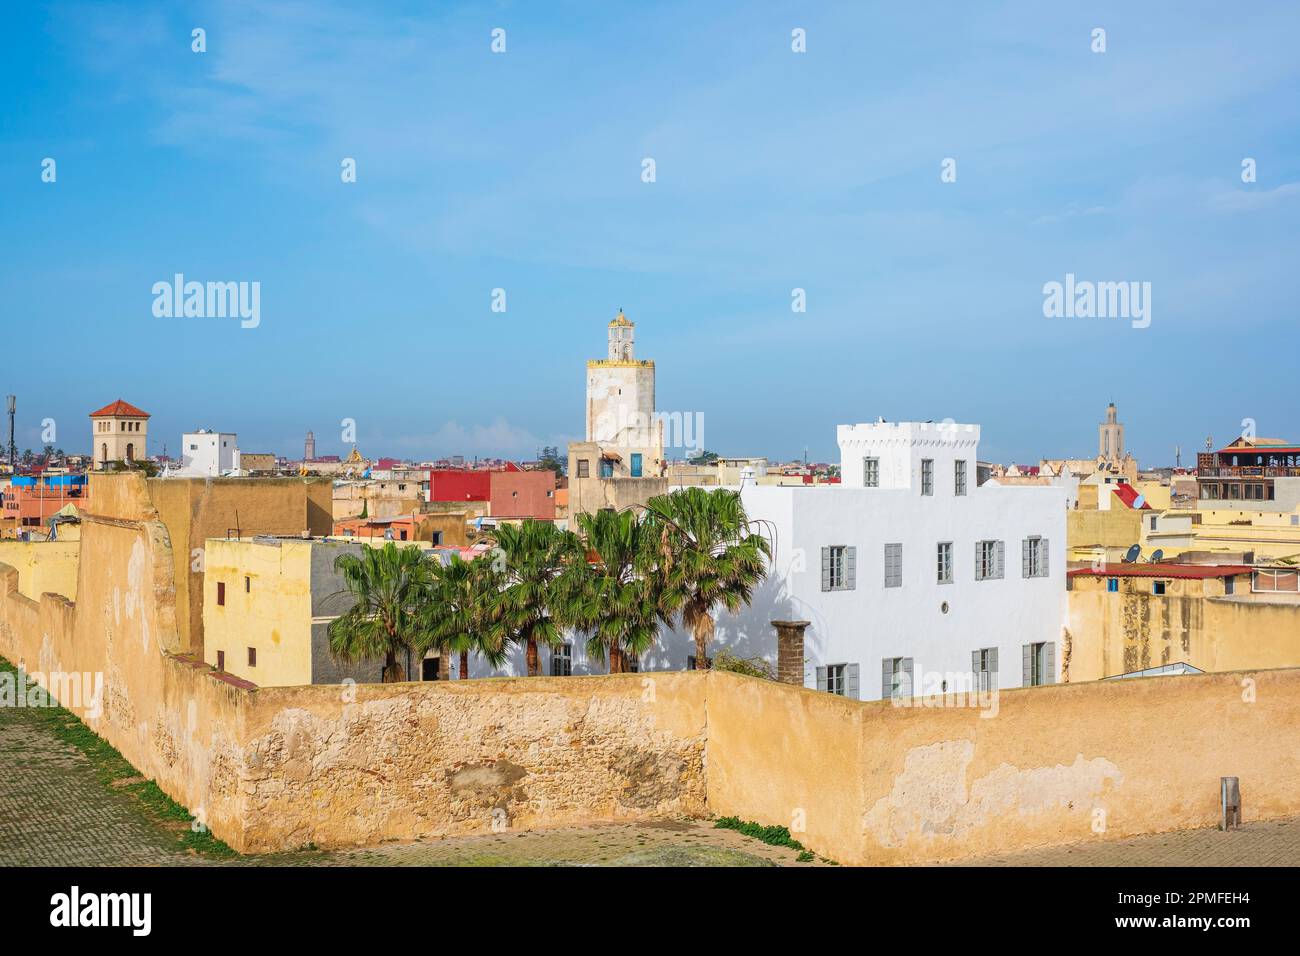 Maroc, El Jadida, la ville fortifiée portugaise de Mazagan classée au patrimoine mondial de l'UNESCO, construite par les Portugais au début du 16th siècle, les remparts de la citadelle Banque D'Images